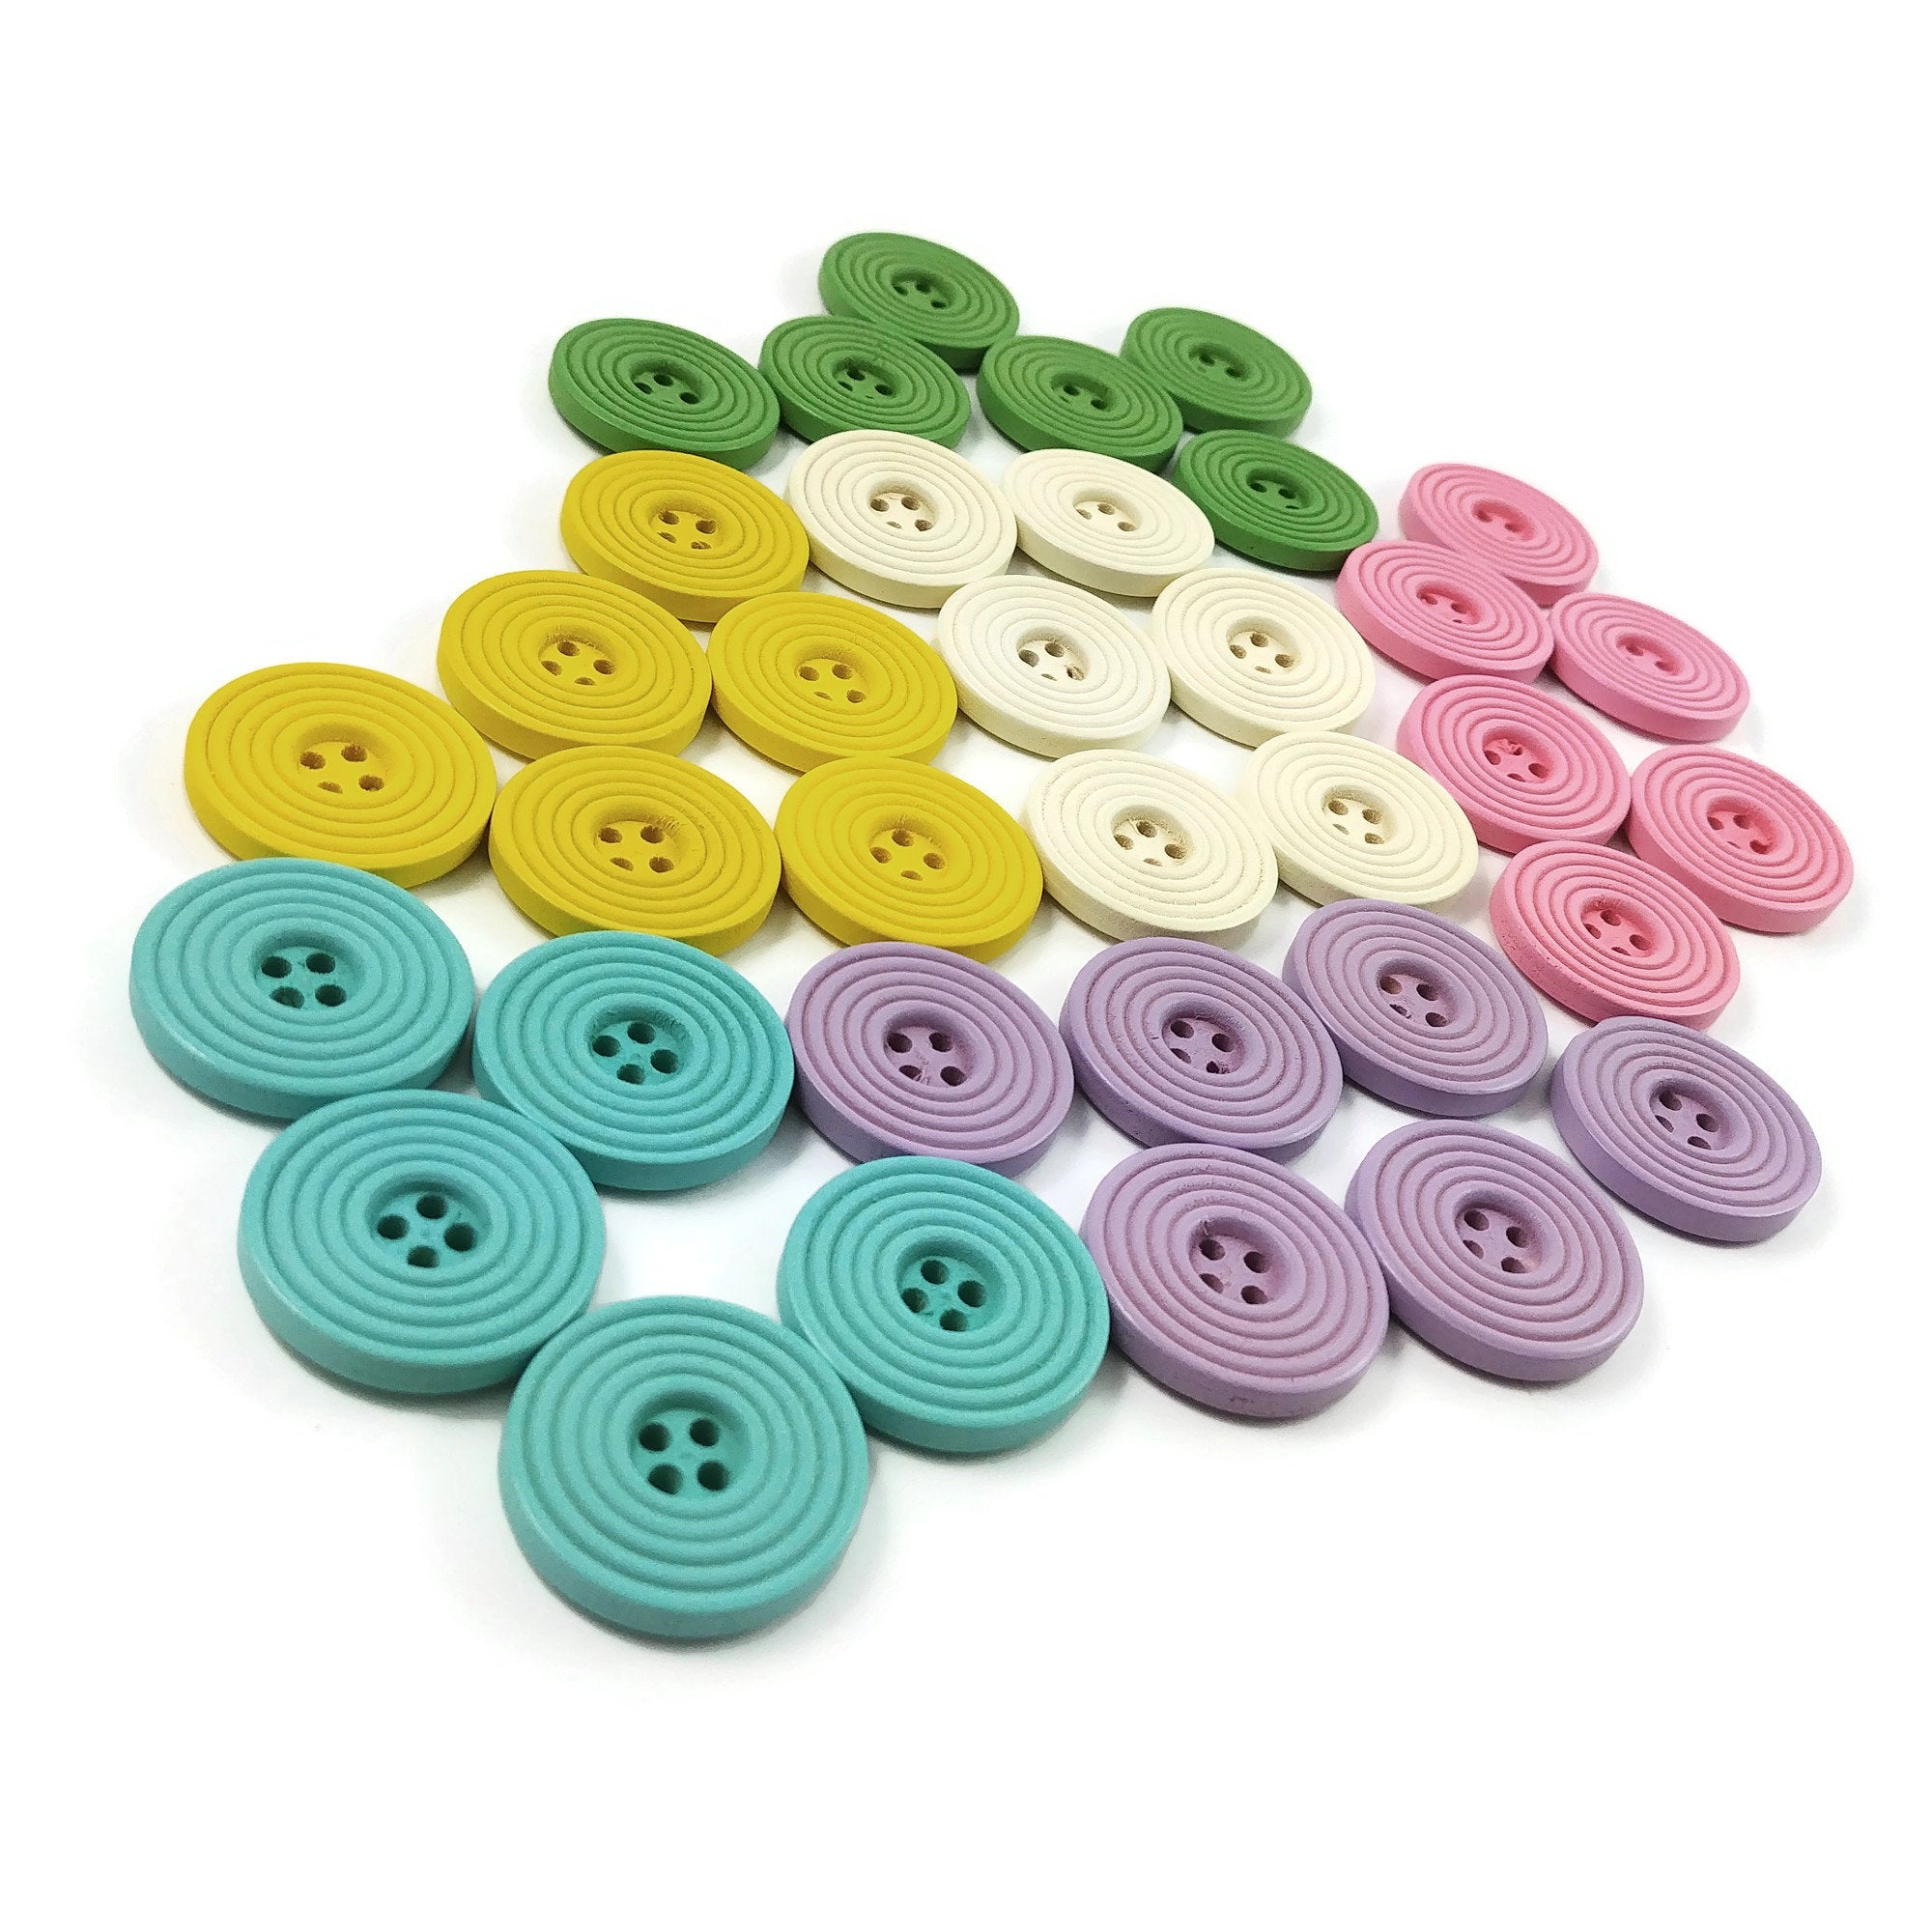 Bouton de bois pastel de 25mm - ensemble de 6 boutons en bois avec cercles